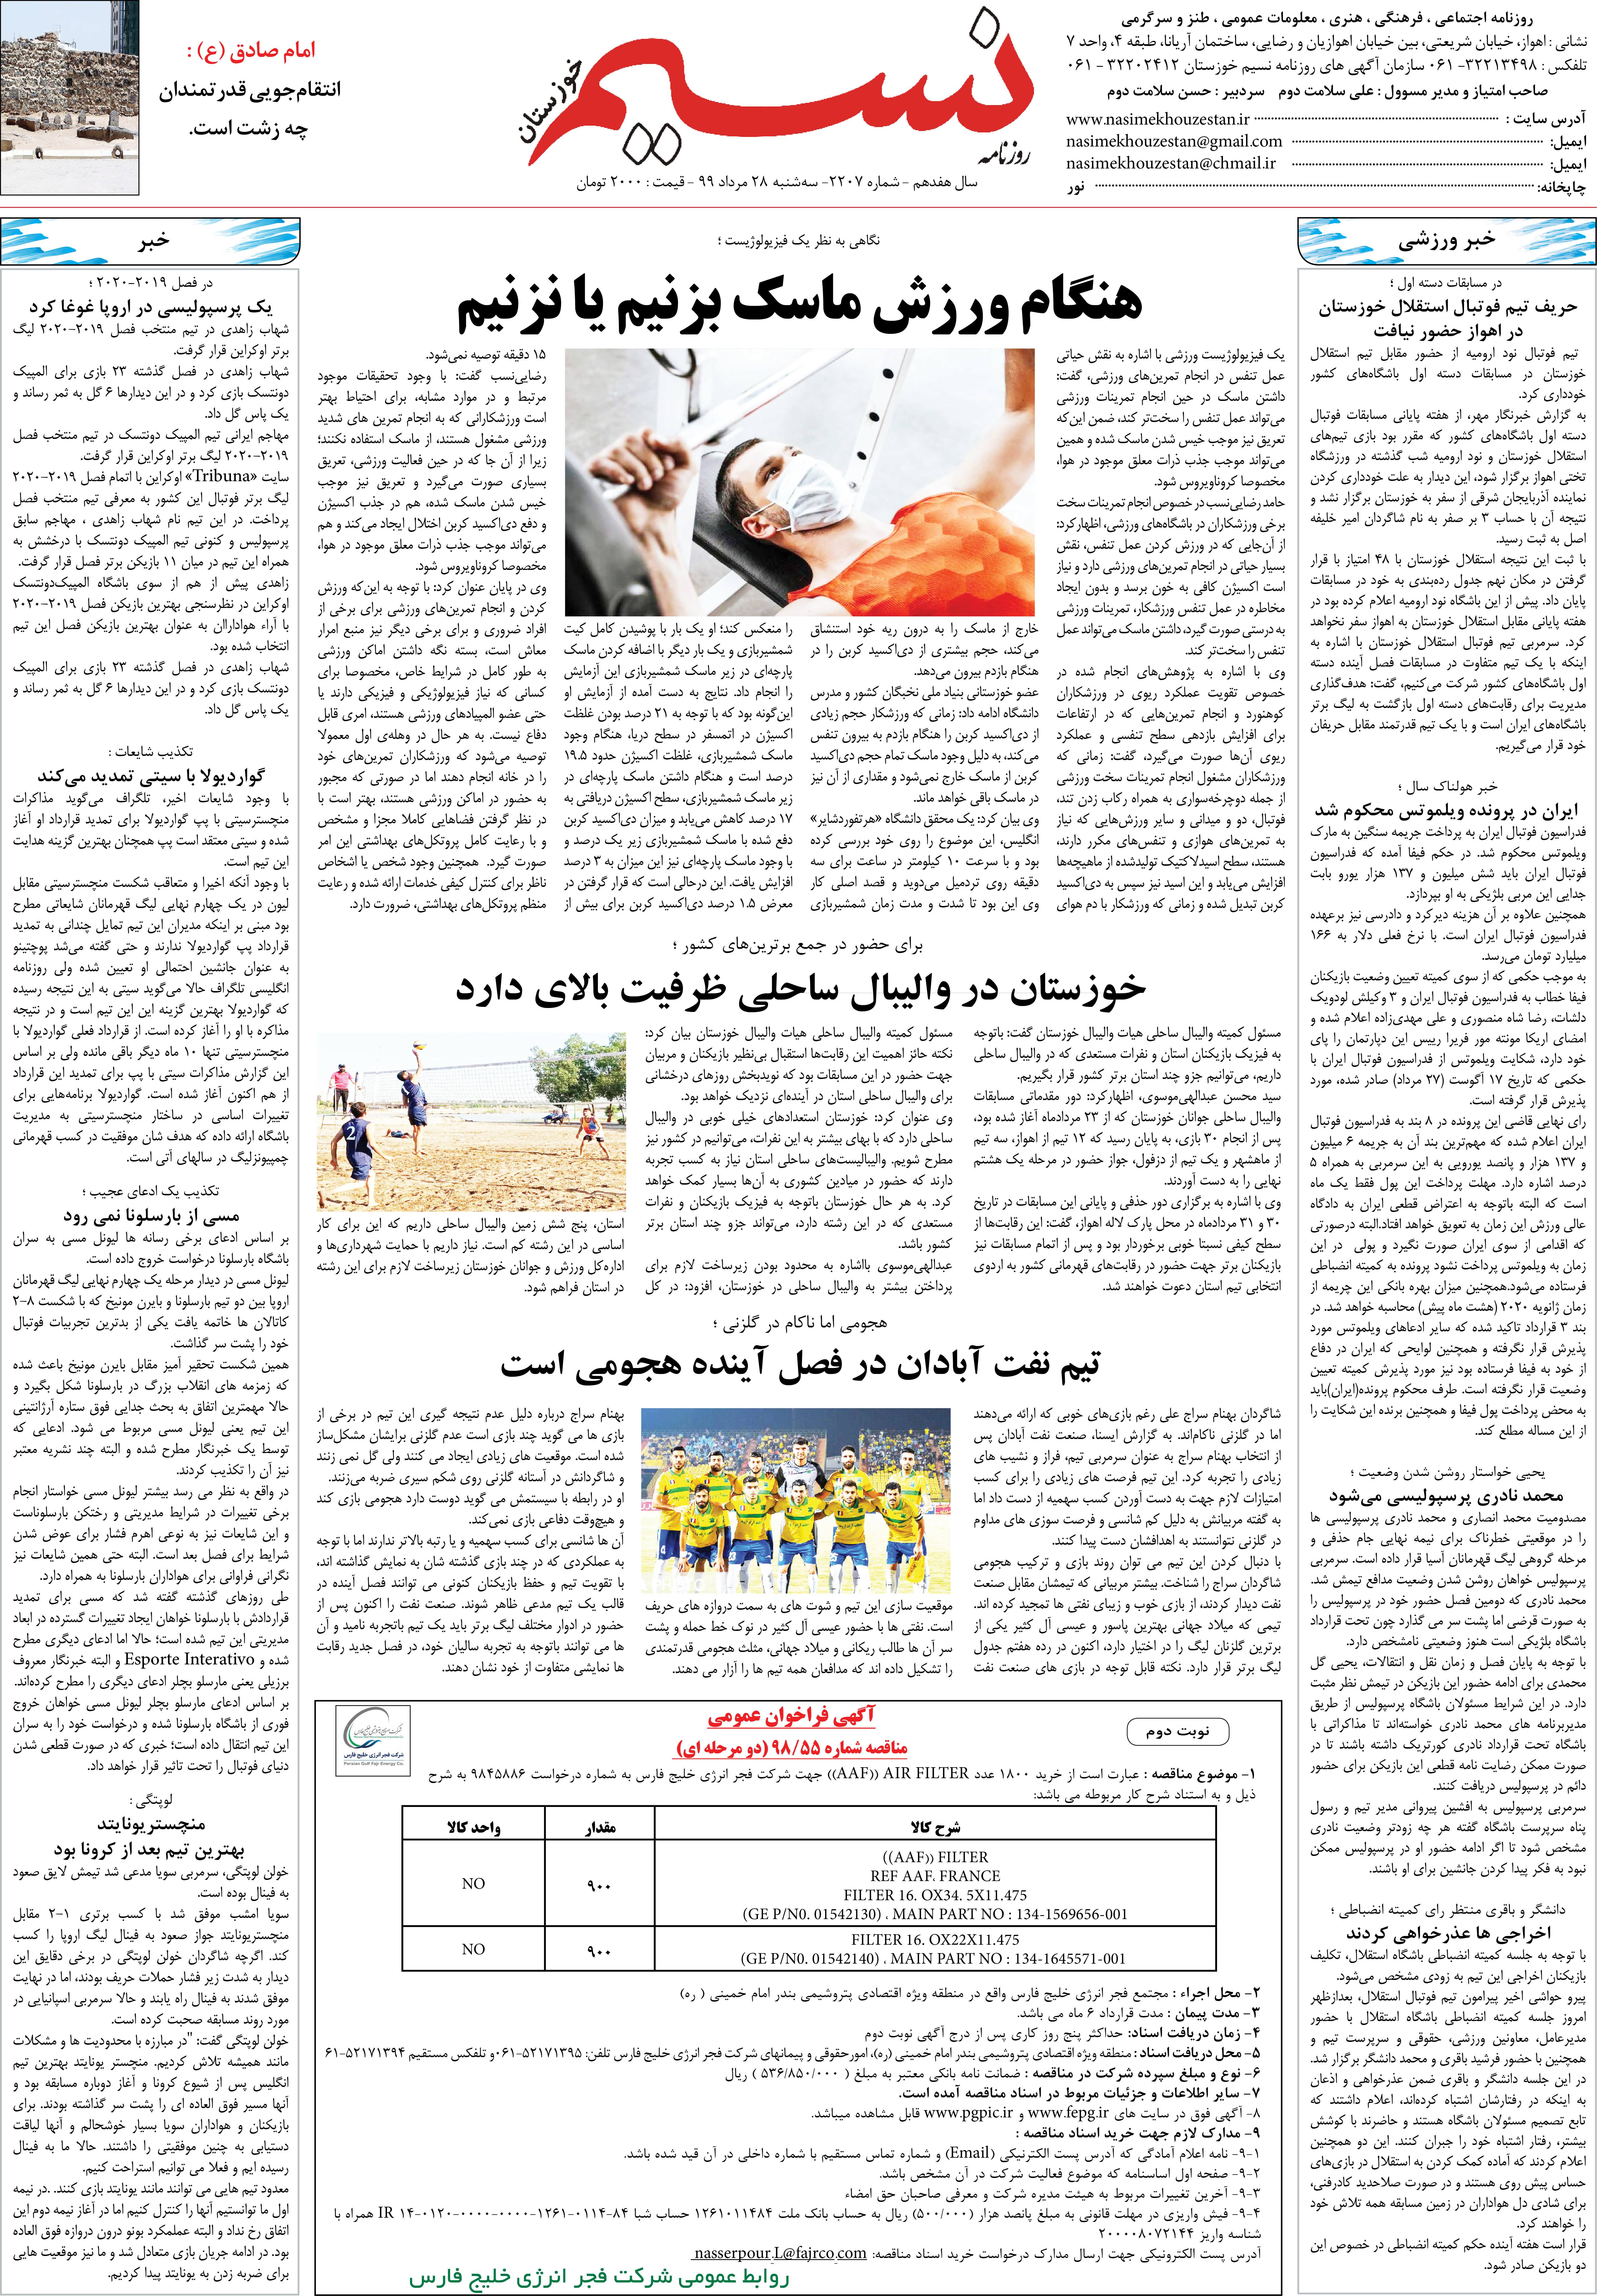 صفحه آخر روزنامه نسیم شماره 2207